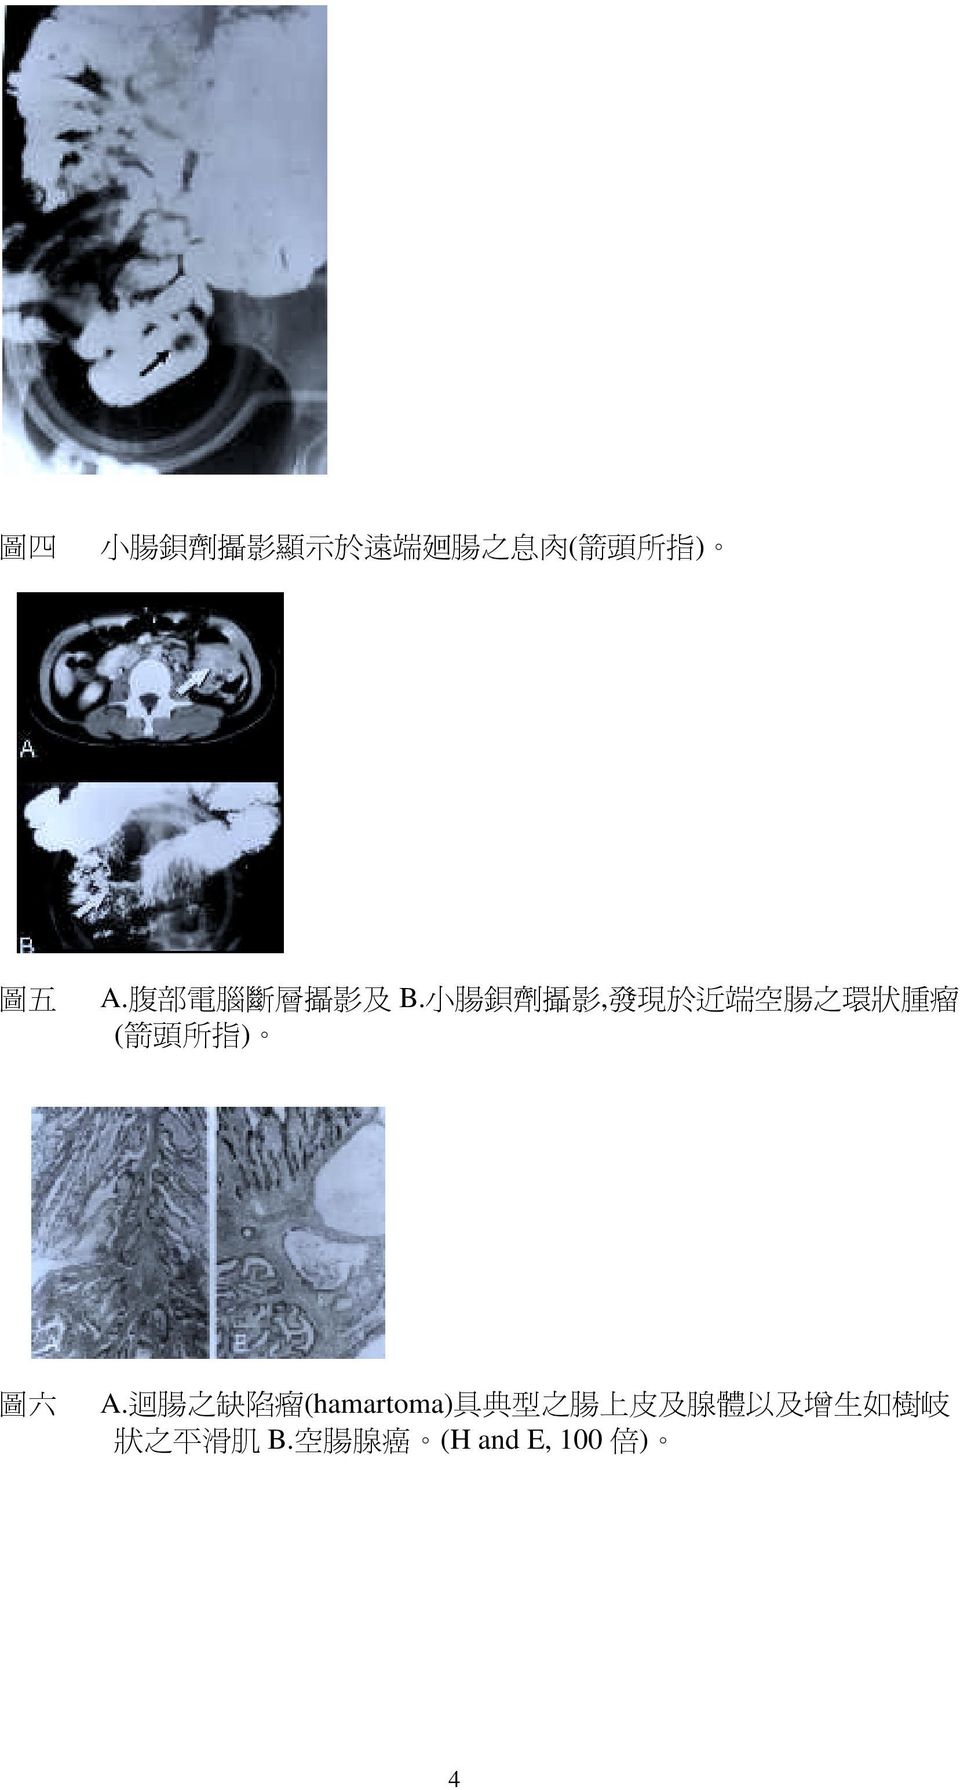 小 腸 鋇 劑 攝 影, 發 現 於 近 端 空 腸 之 環 狀 腫 瘤 ( 箭 頭 所 指 ) 圖 六 A.